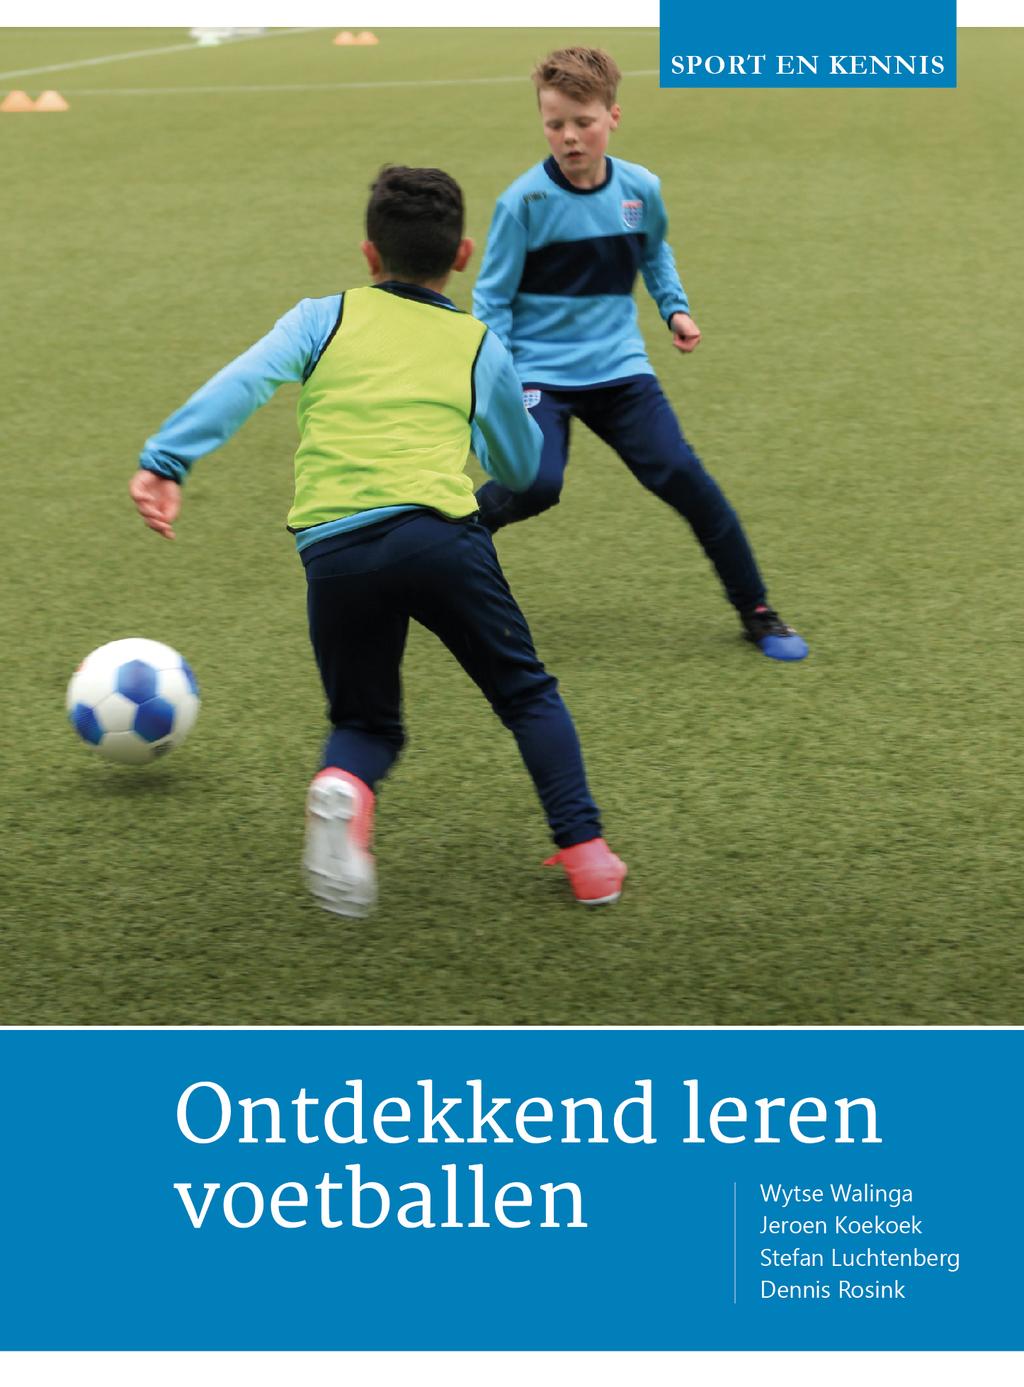 Sport en Kennis Deze preview is een gedeelte uit het boek: Ontdekkend leren voetballen